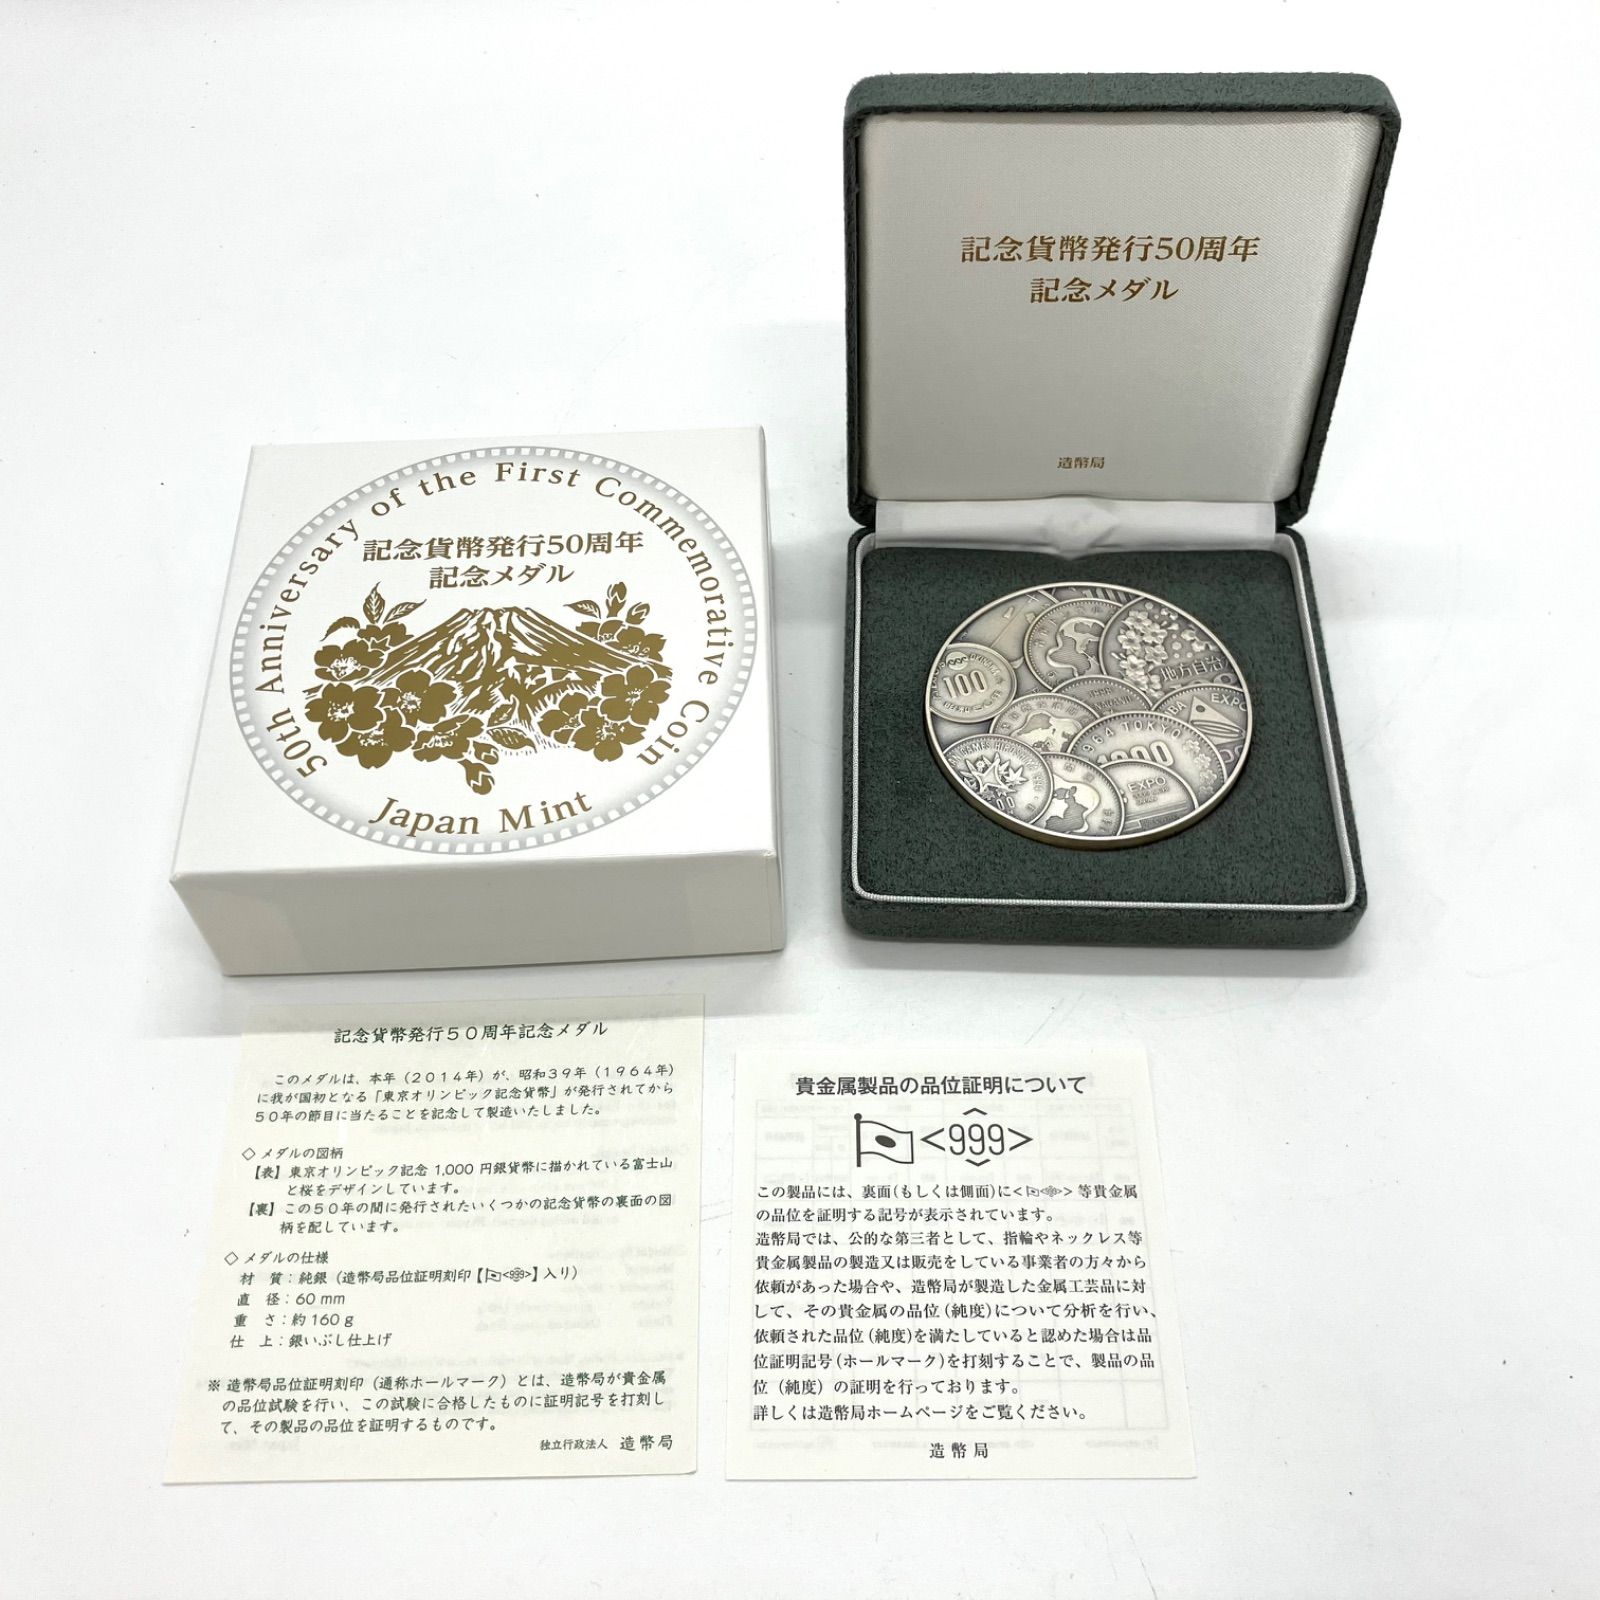 新幹線開業50周年記念貨幣発行記念メダル - fawema.org